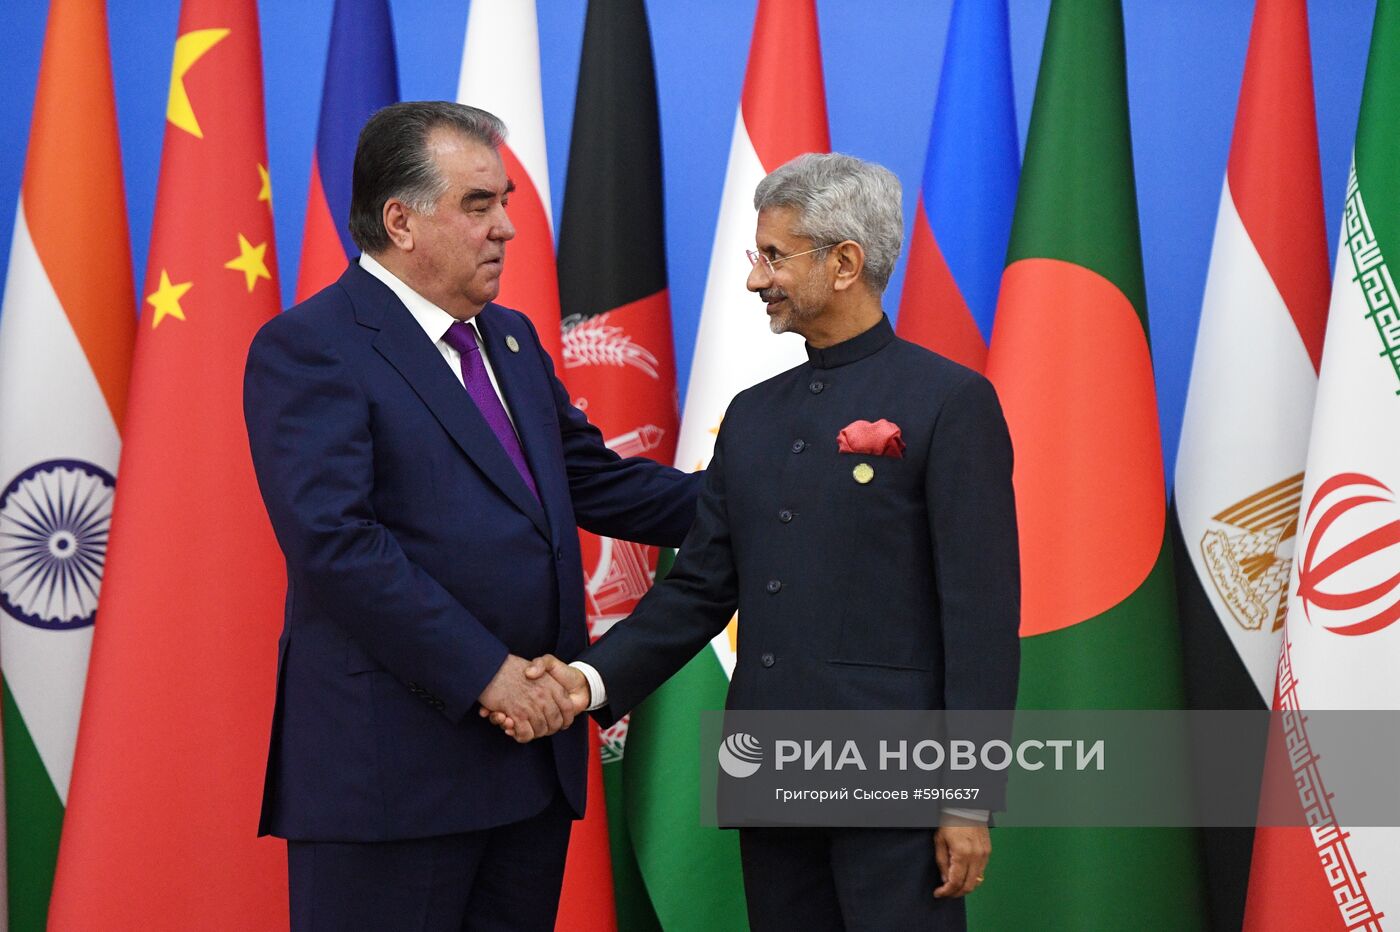 Рабочий визит президента РФ В. Путина в Таджикистан для участия в СВМДА